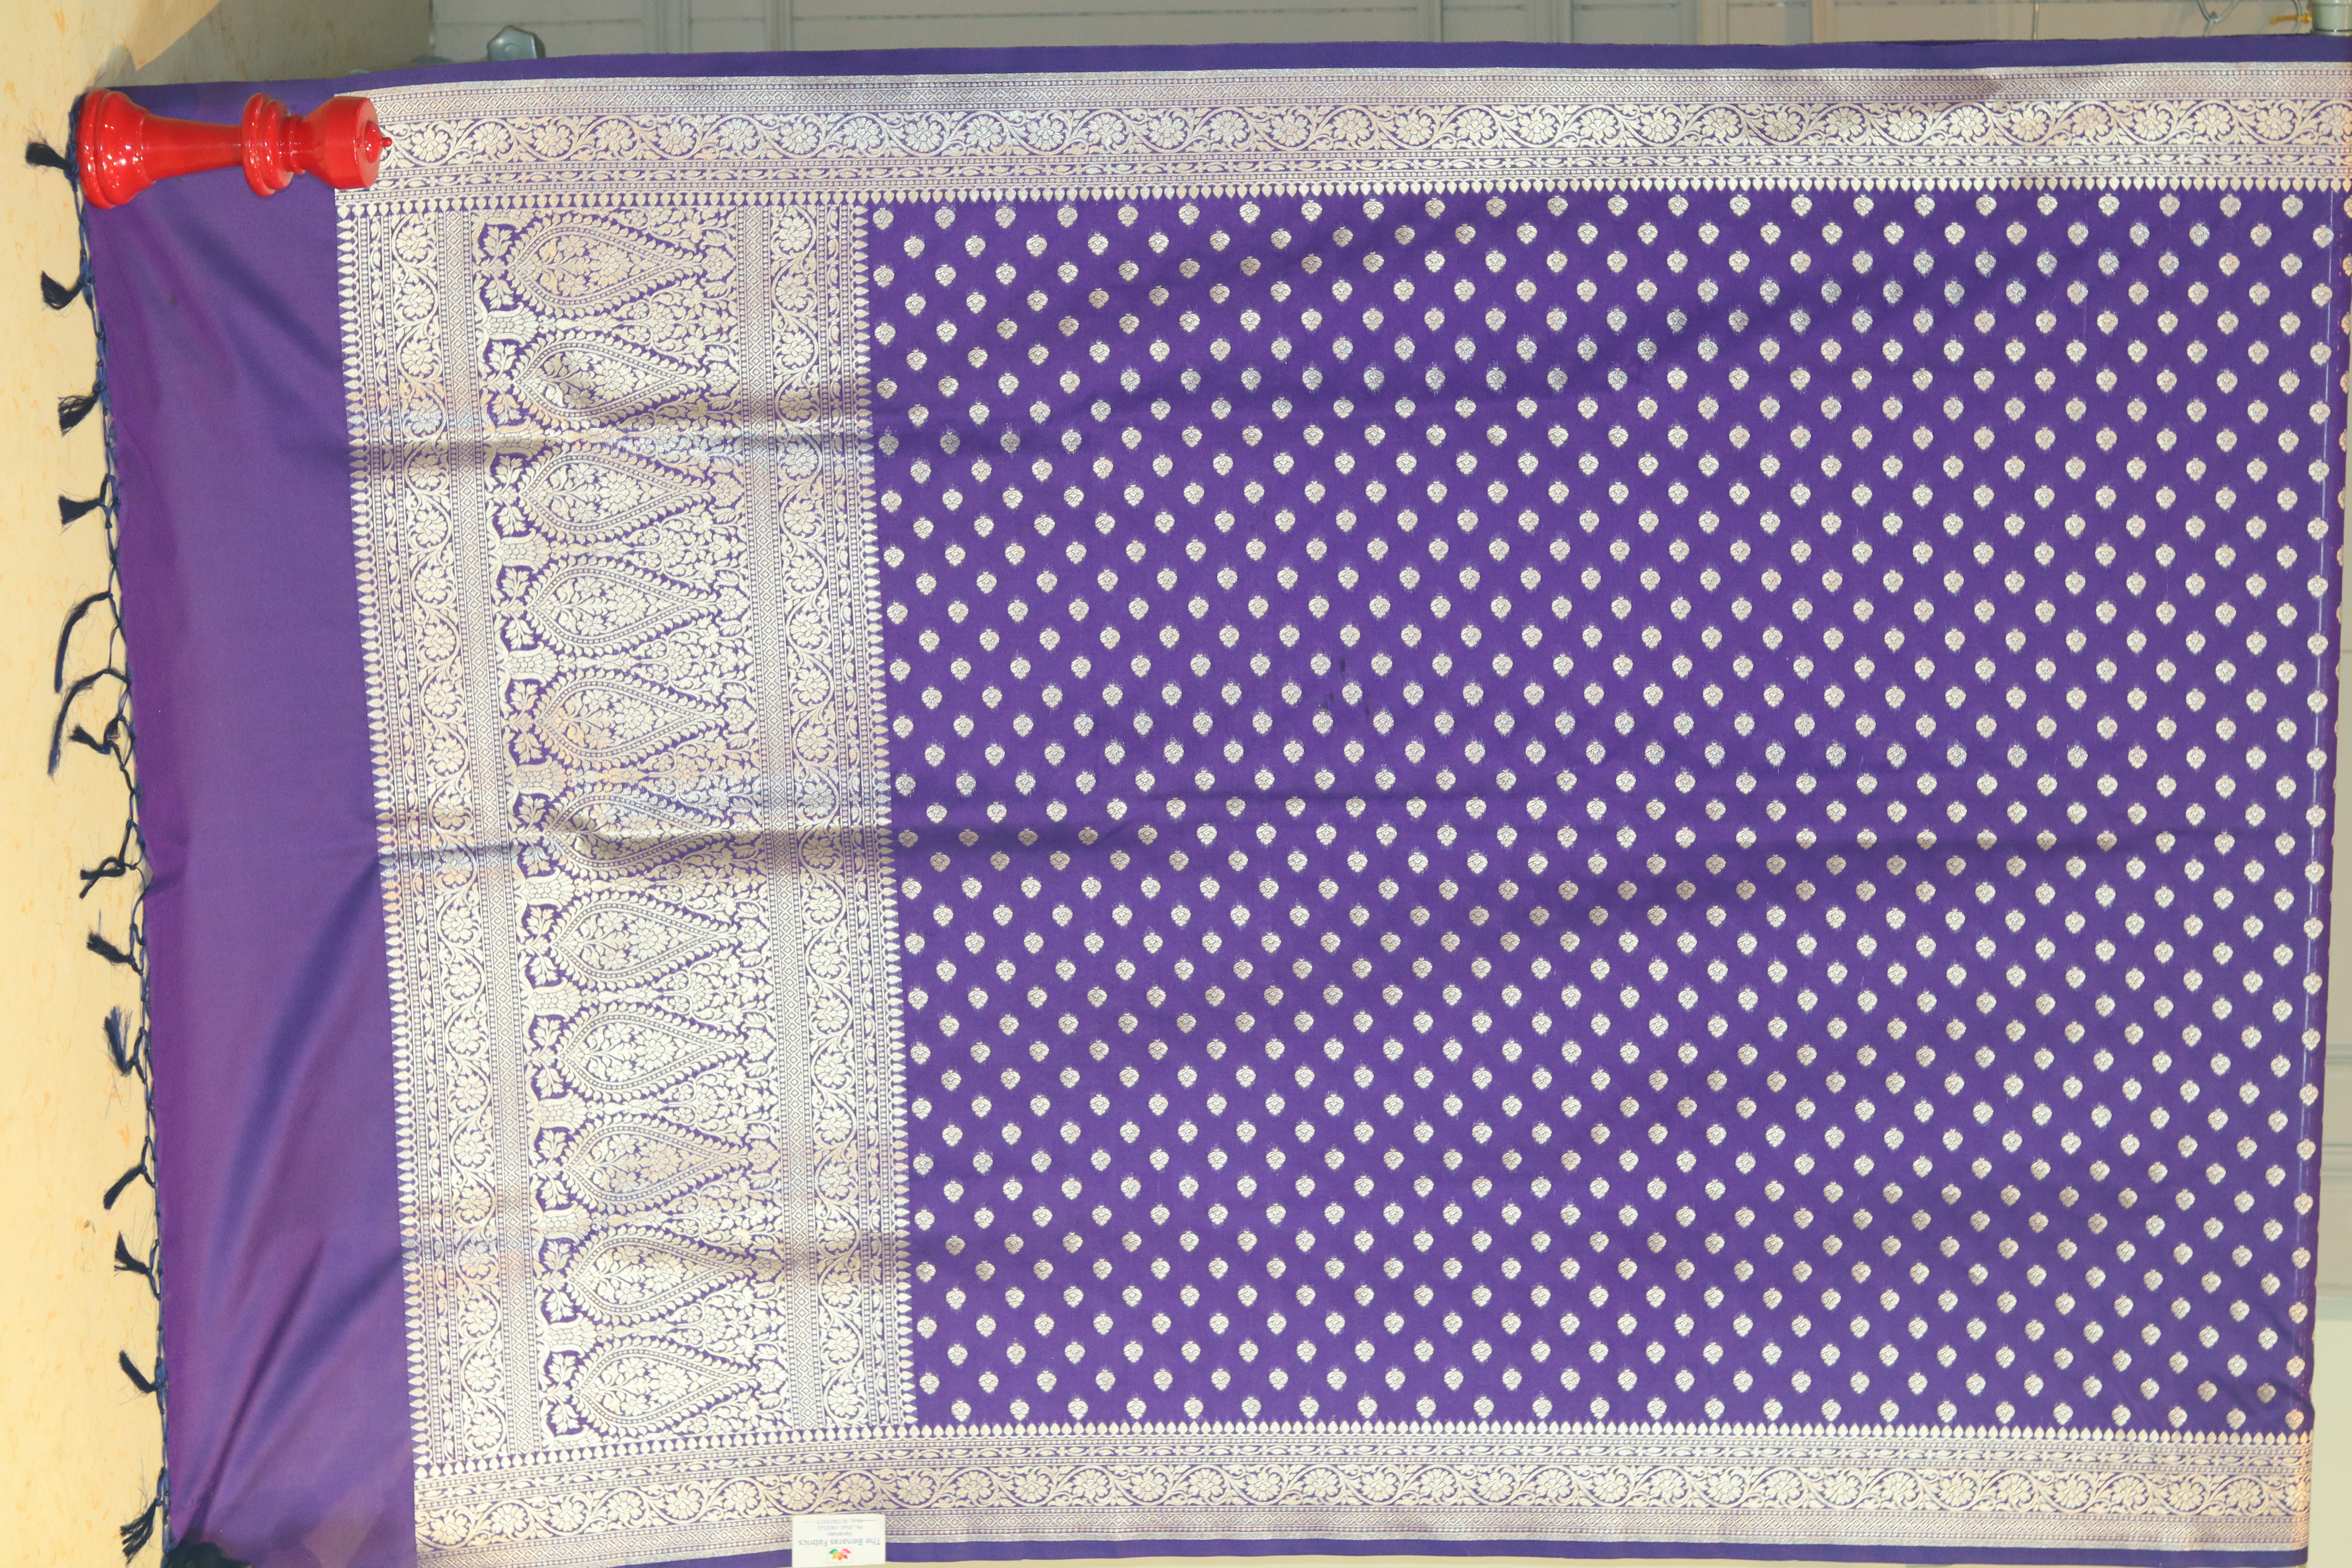 Regal Elegance: Exquisite Banarasi Artsilk Zari Weave Dupatta